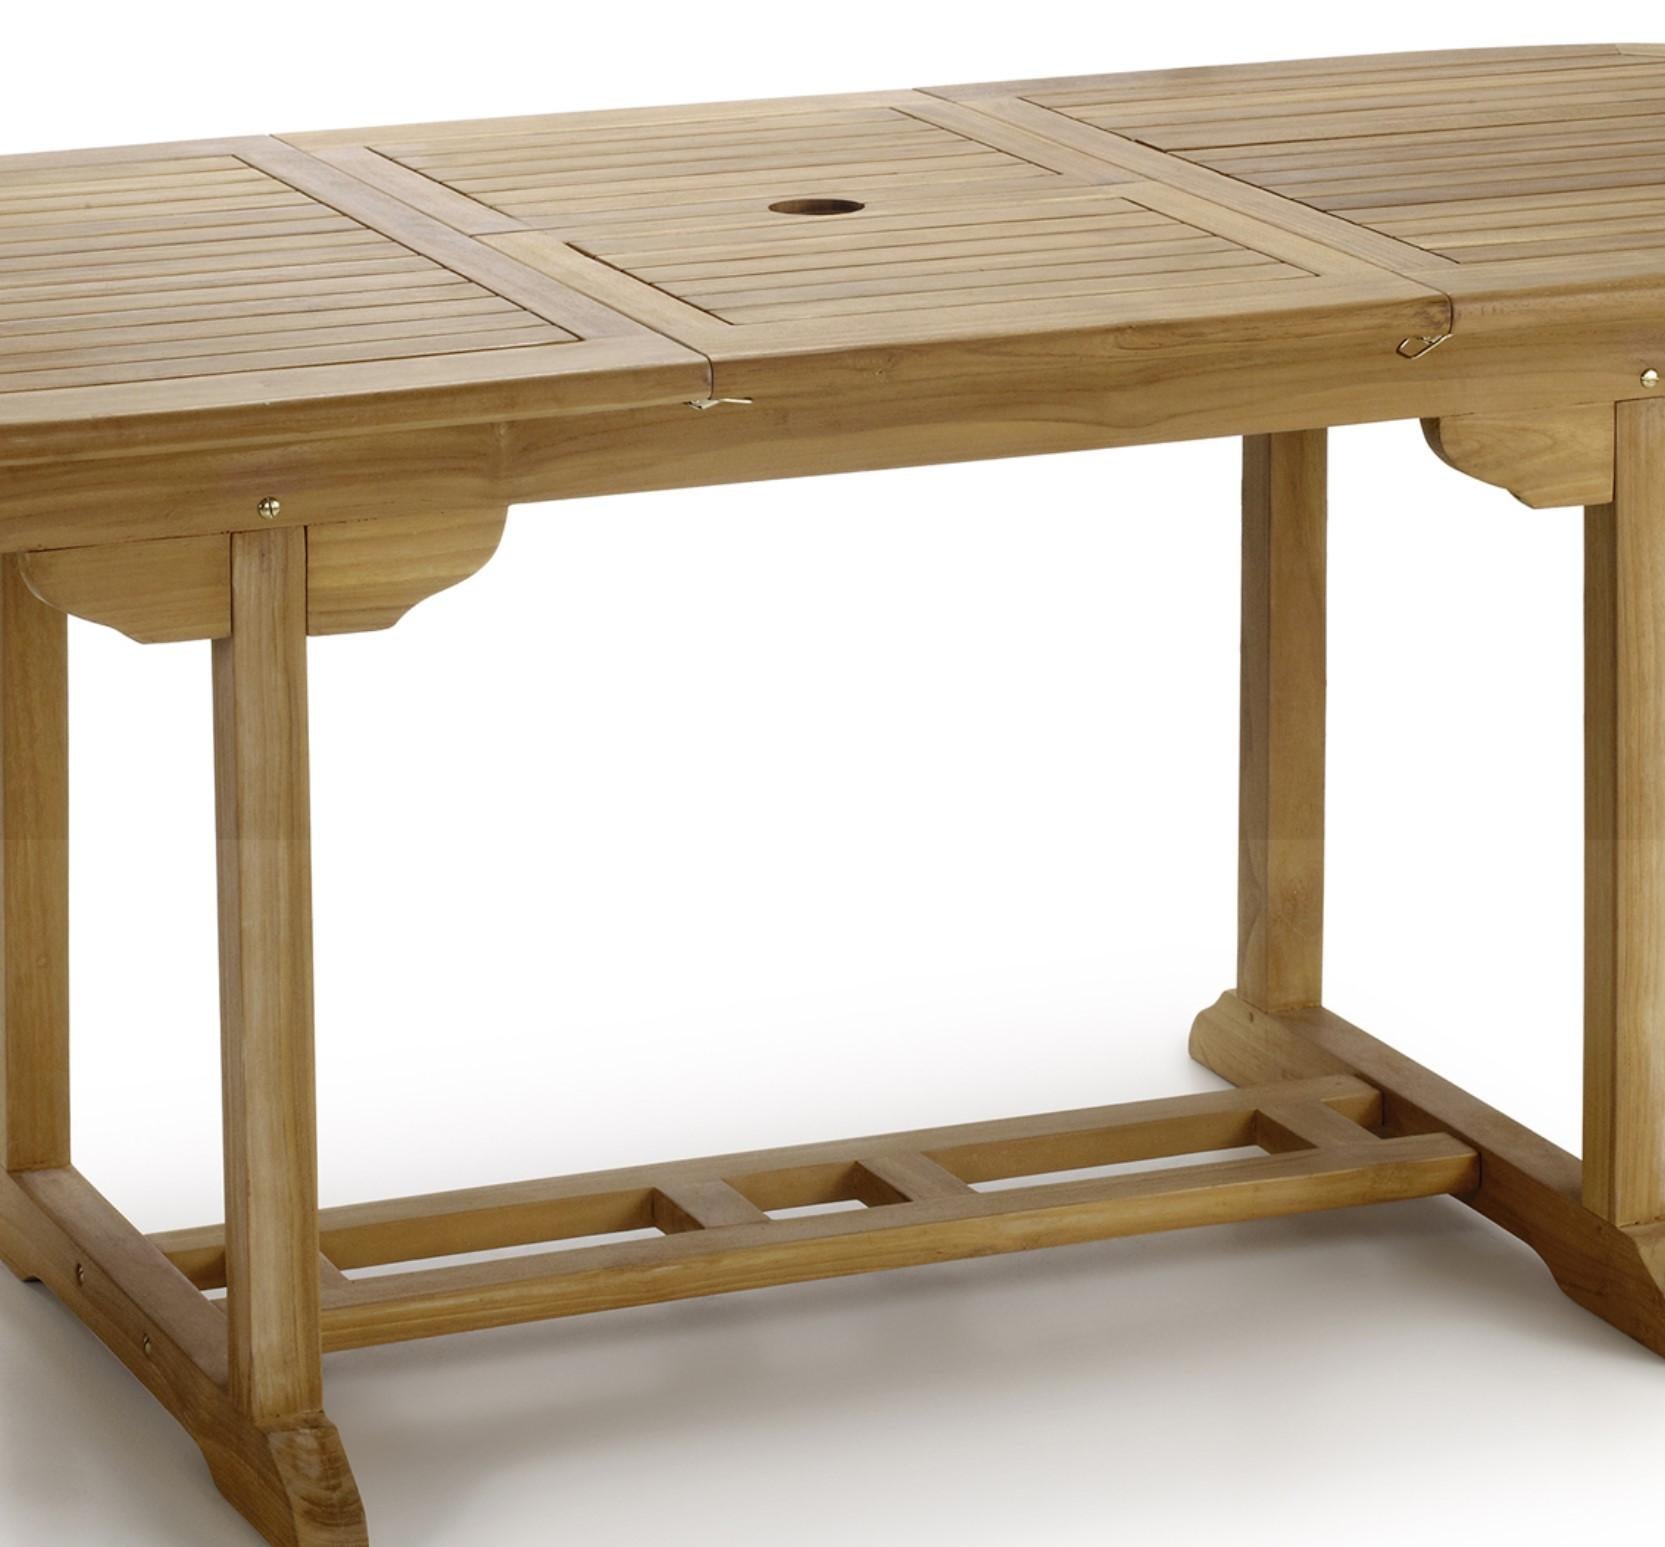 Neuer ovaler Esstisch aus Teakholz, klappbar, für drinnen und draußen

Ausziehbar: 66.92in-86.61in.